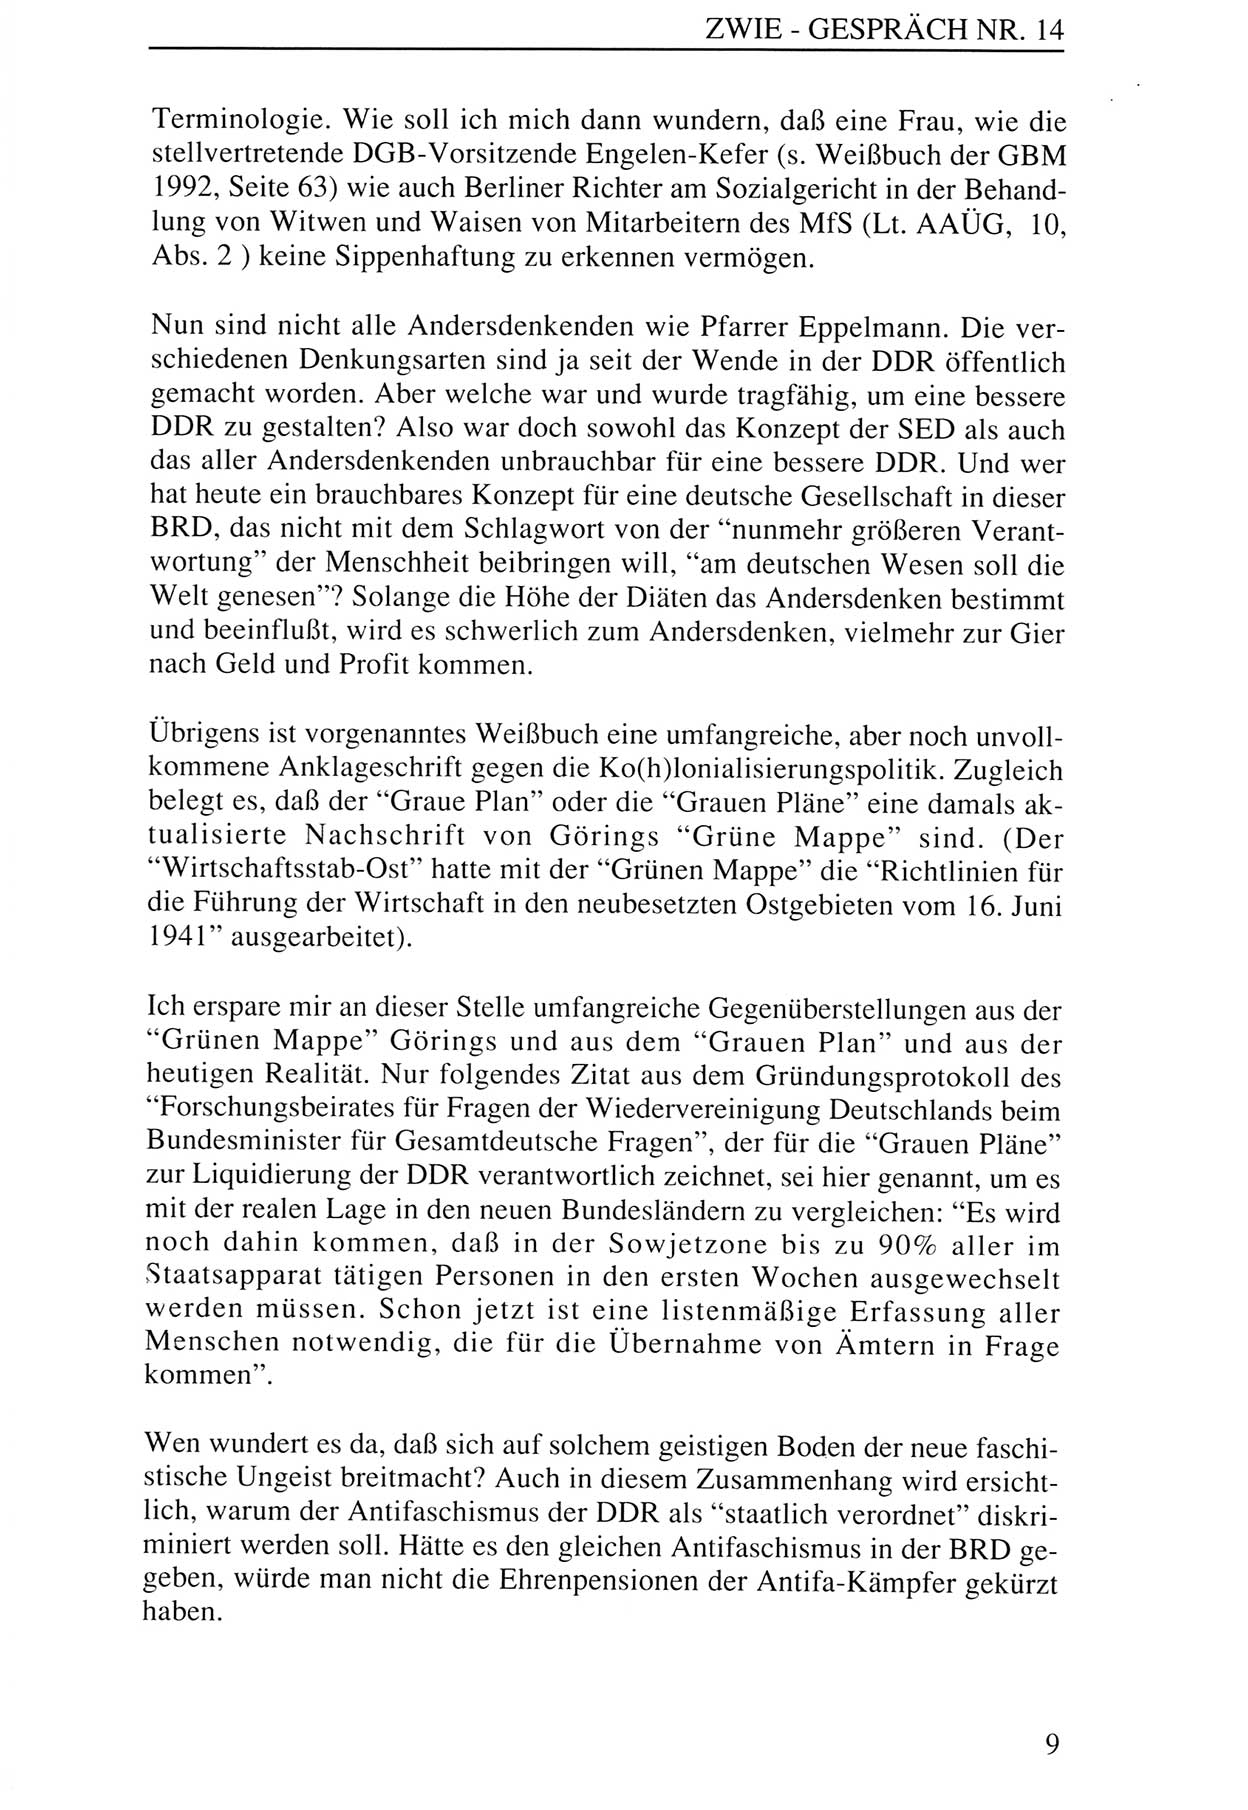 Zwie-Gespräch, Beiträge zur Aufarbeitung der Staatssicherheits-Vergangenheit [Deutsche Demokratische Republik (DDR)], Ausgabe Nr. 14, Berlin 1993, Seite 9 (Zwie-Gespr. Ausg. 14 1993, S. 9)